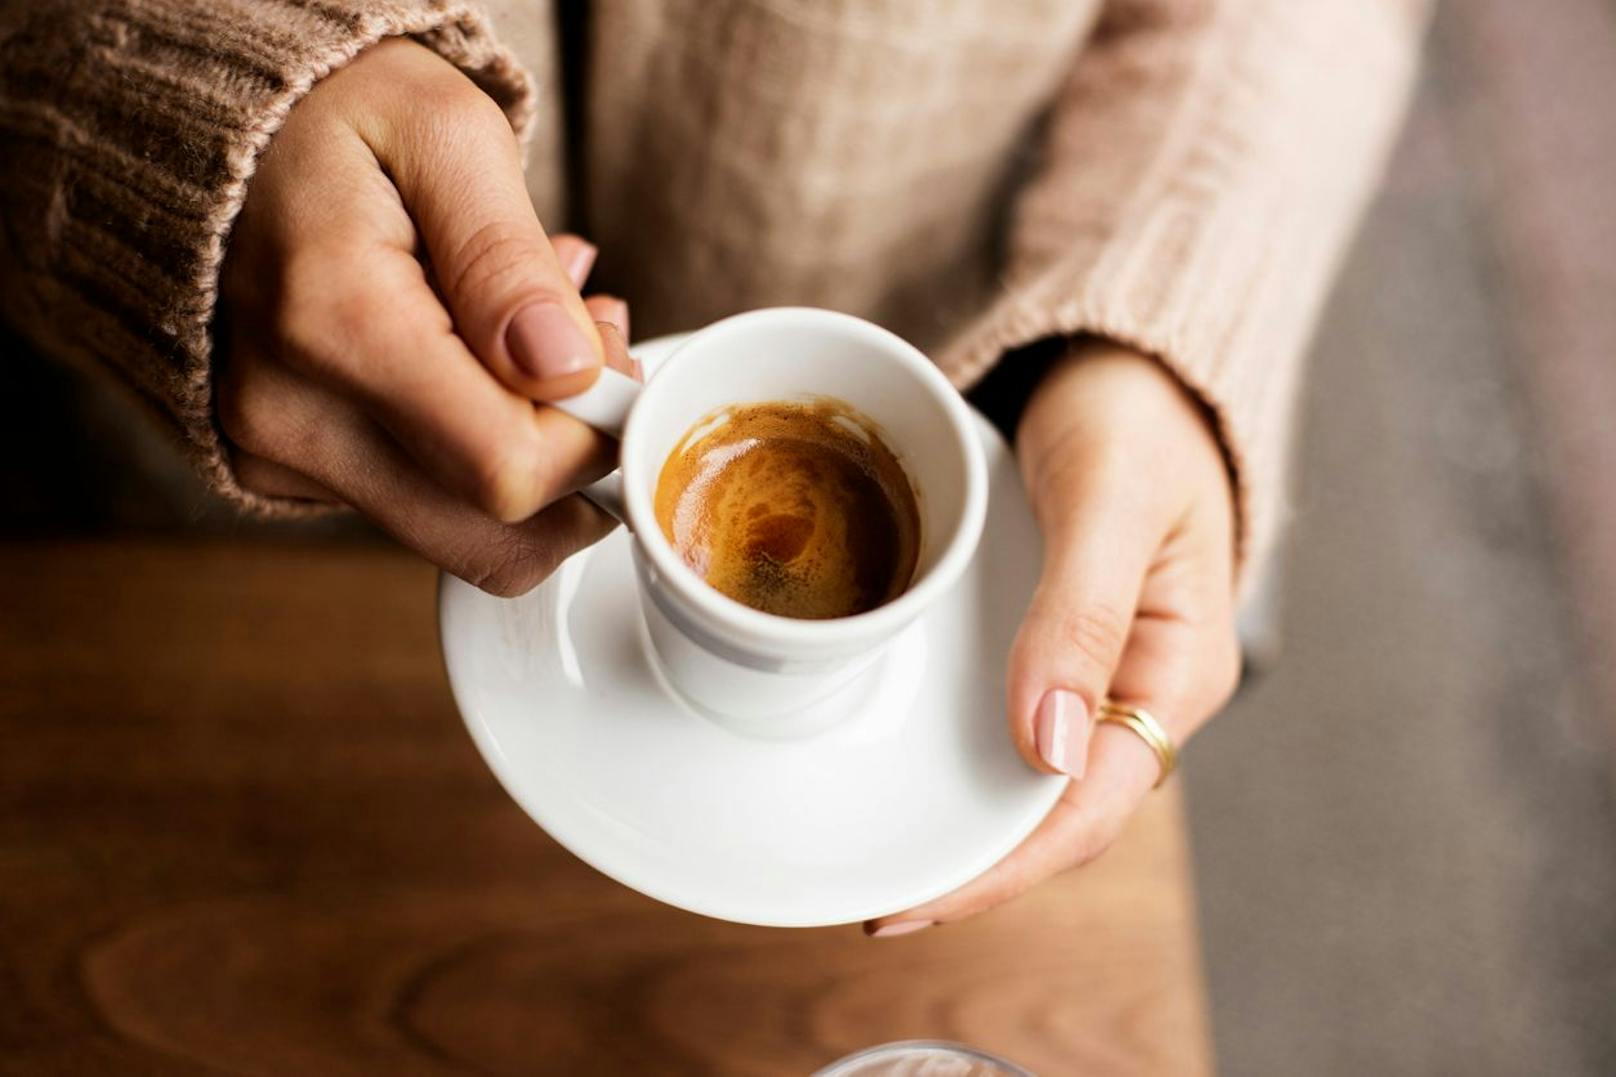 Kaffee am Morgen auf leeren Magen zu trinken, sei keine gute Idee, behauptet eine Ernährungsexpertin. (Symbolbild).